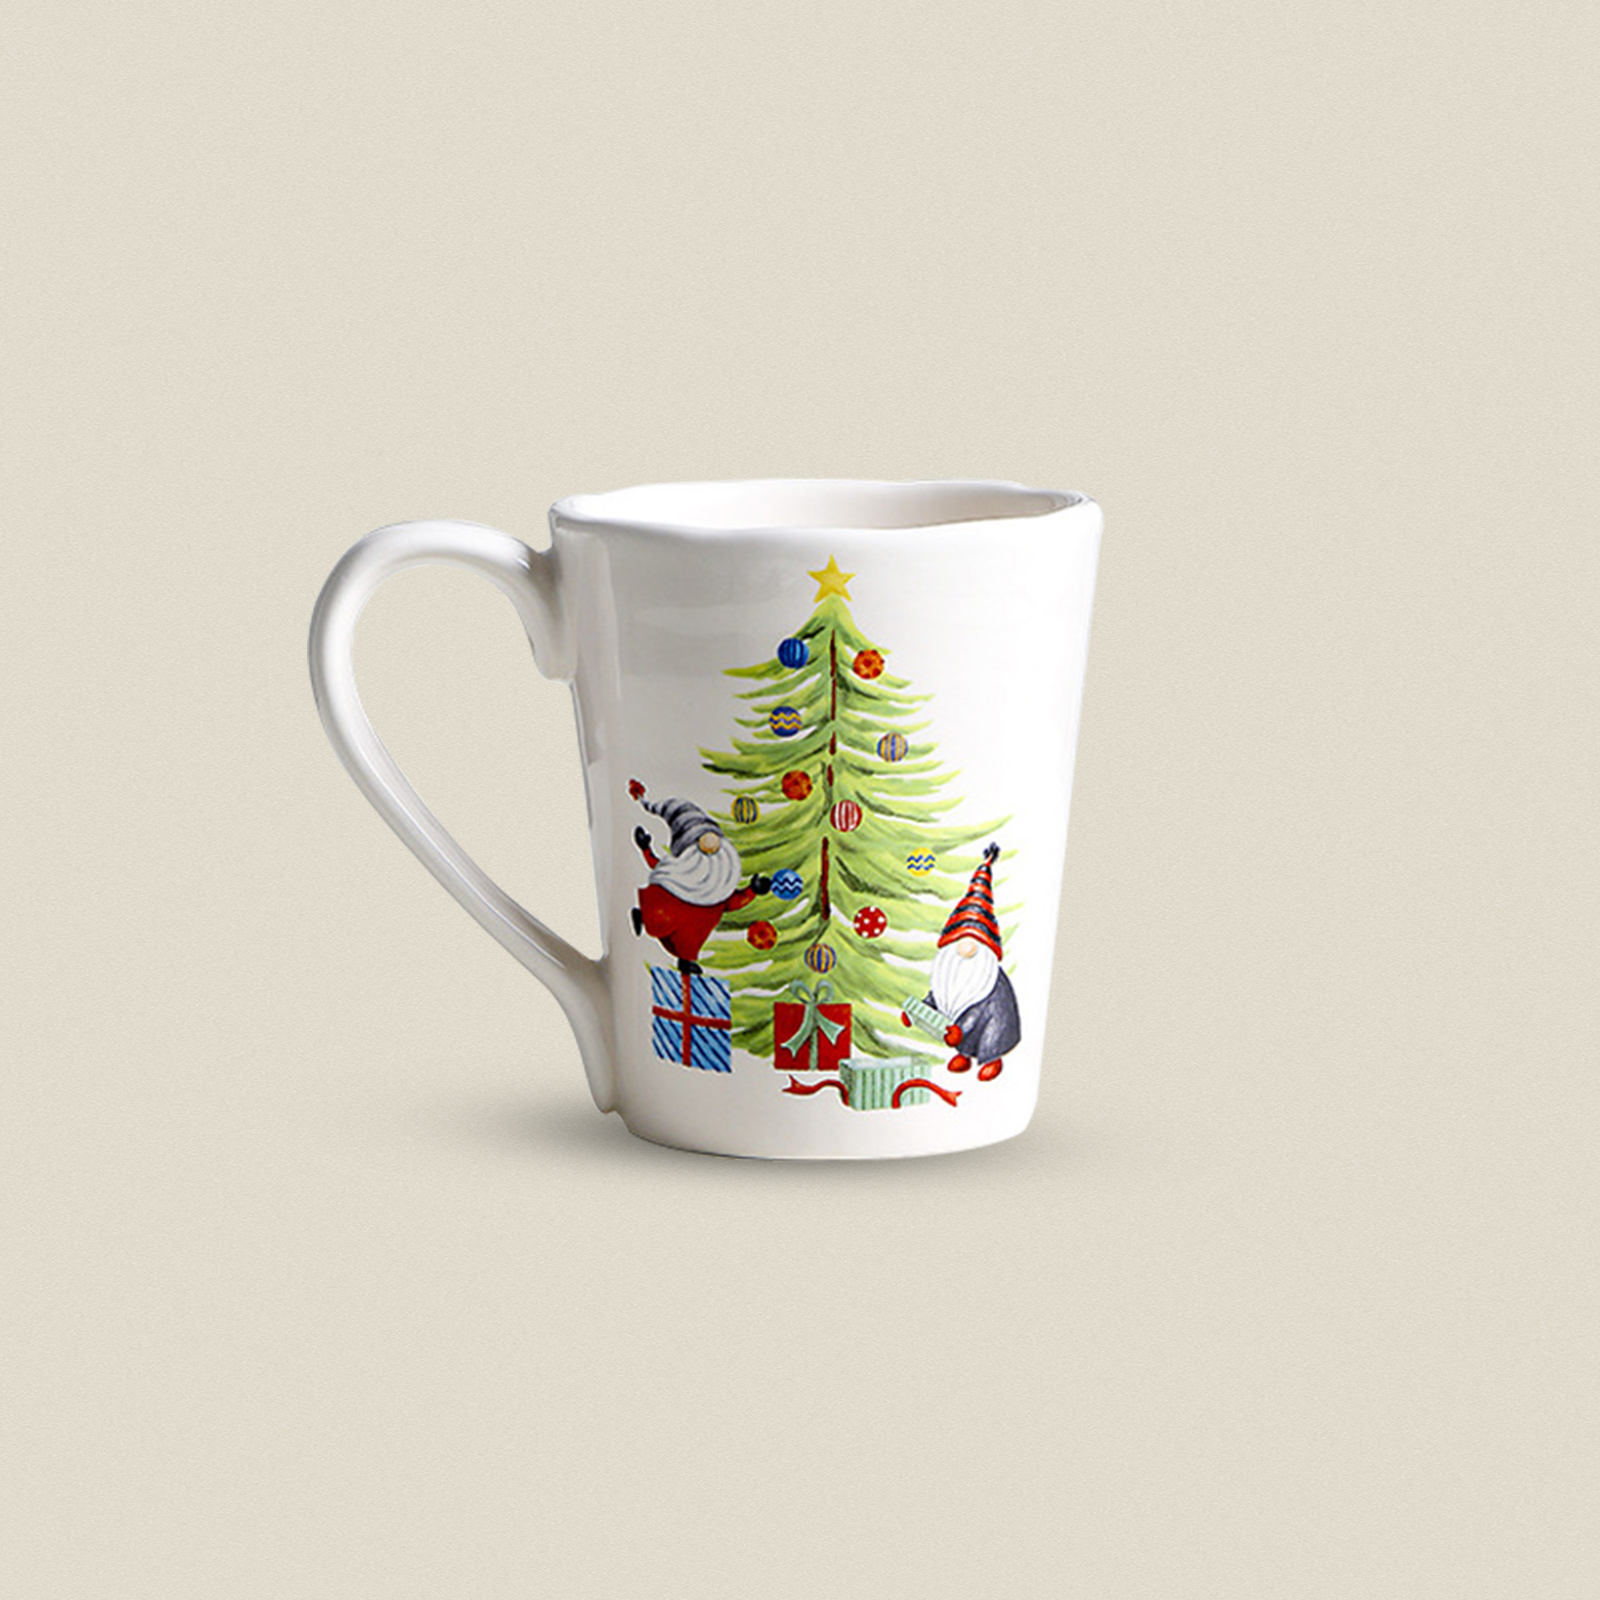 Santa and Christmas Tree Mug